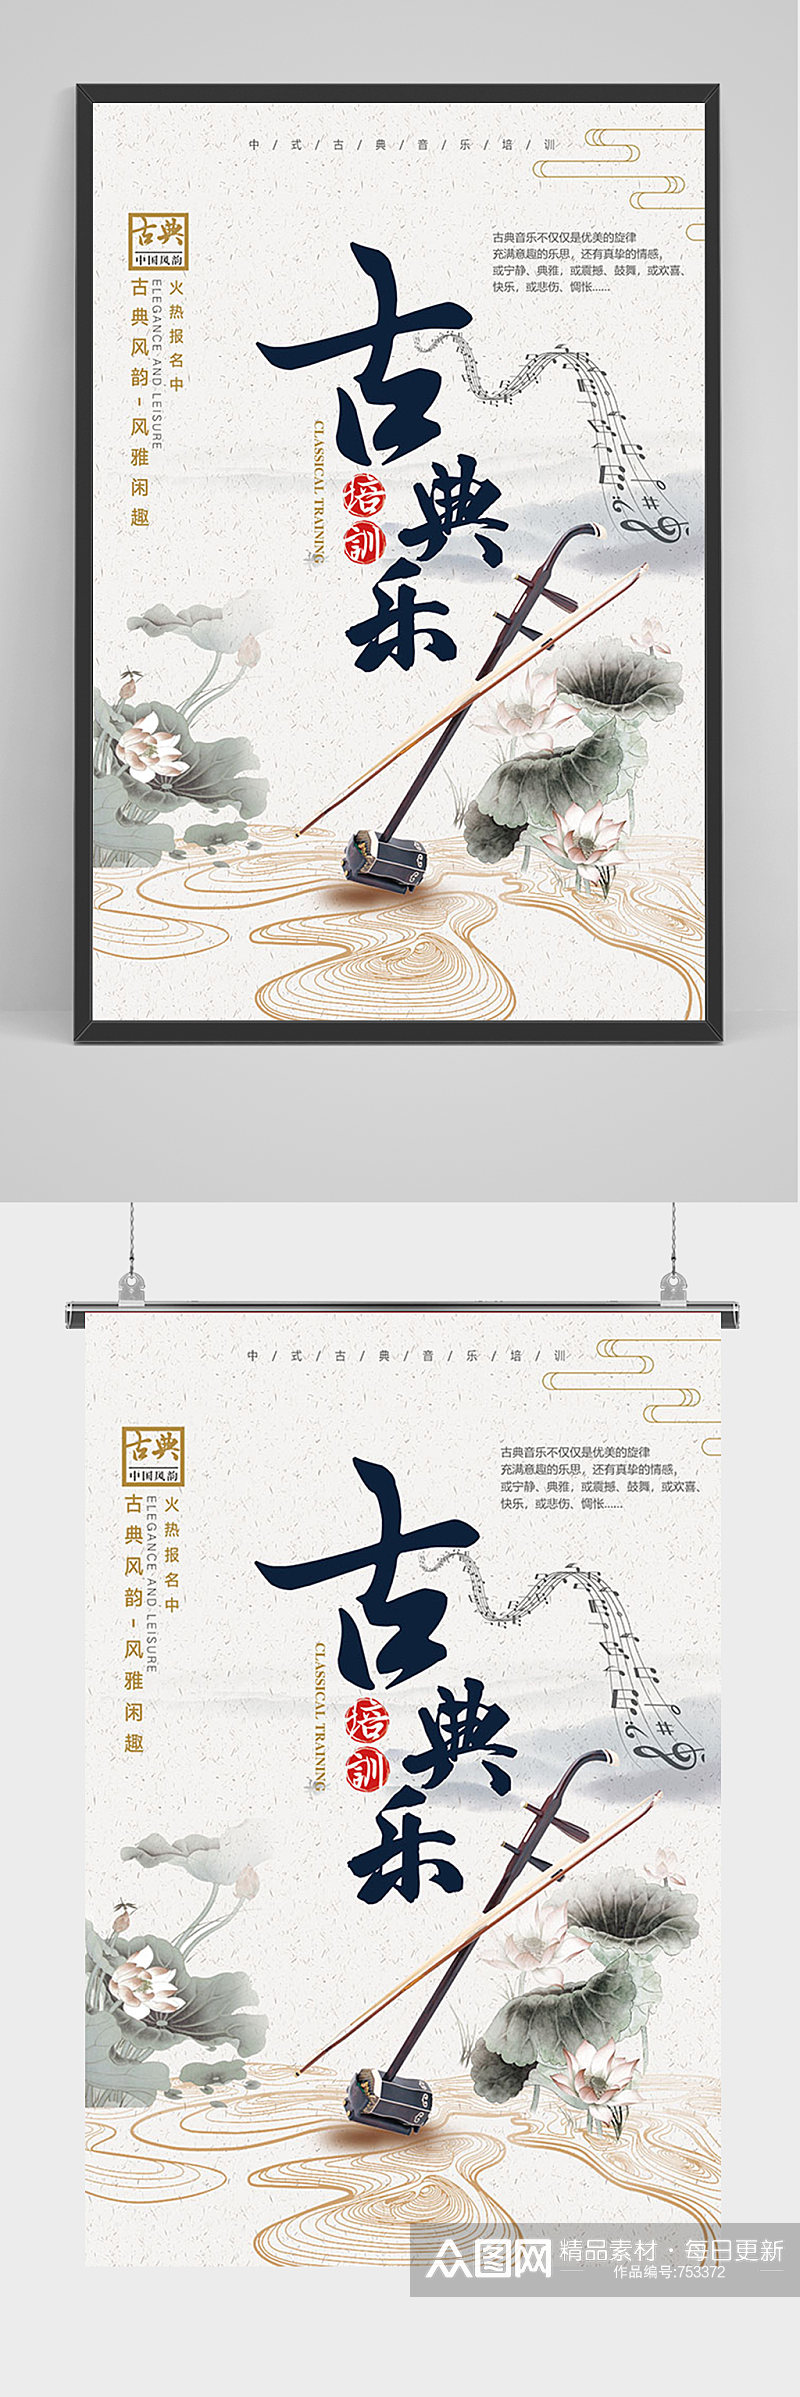 中国风古典乐二胡乐器海报素材